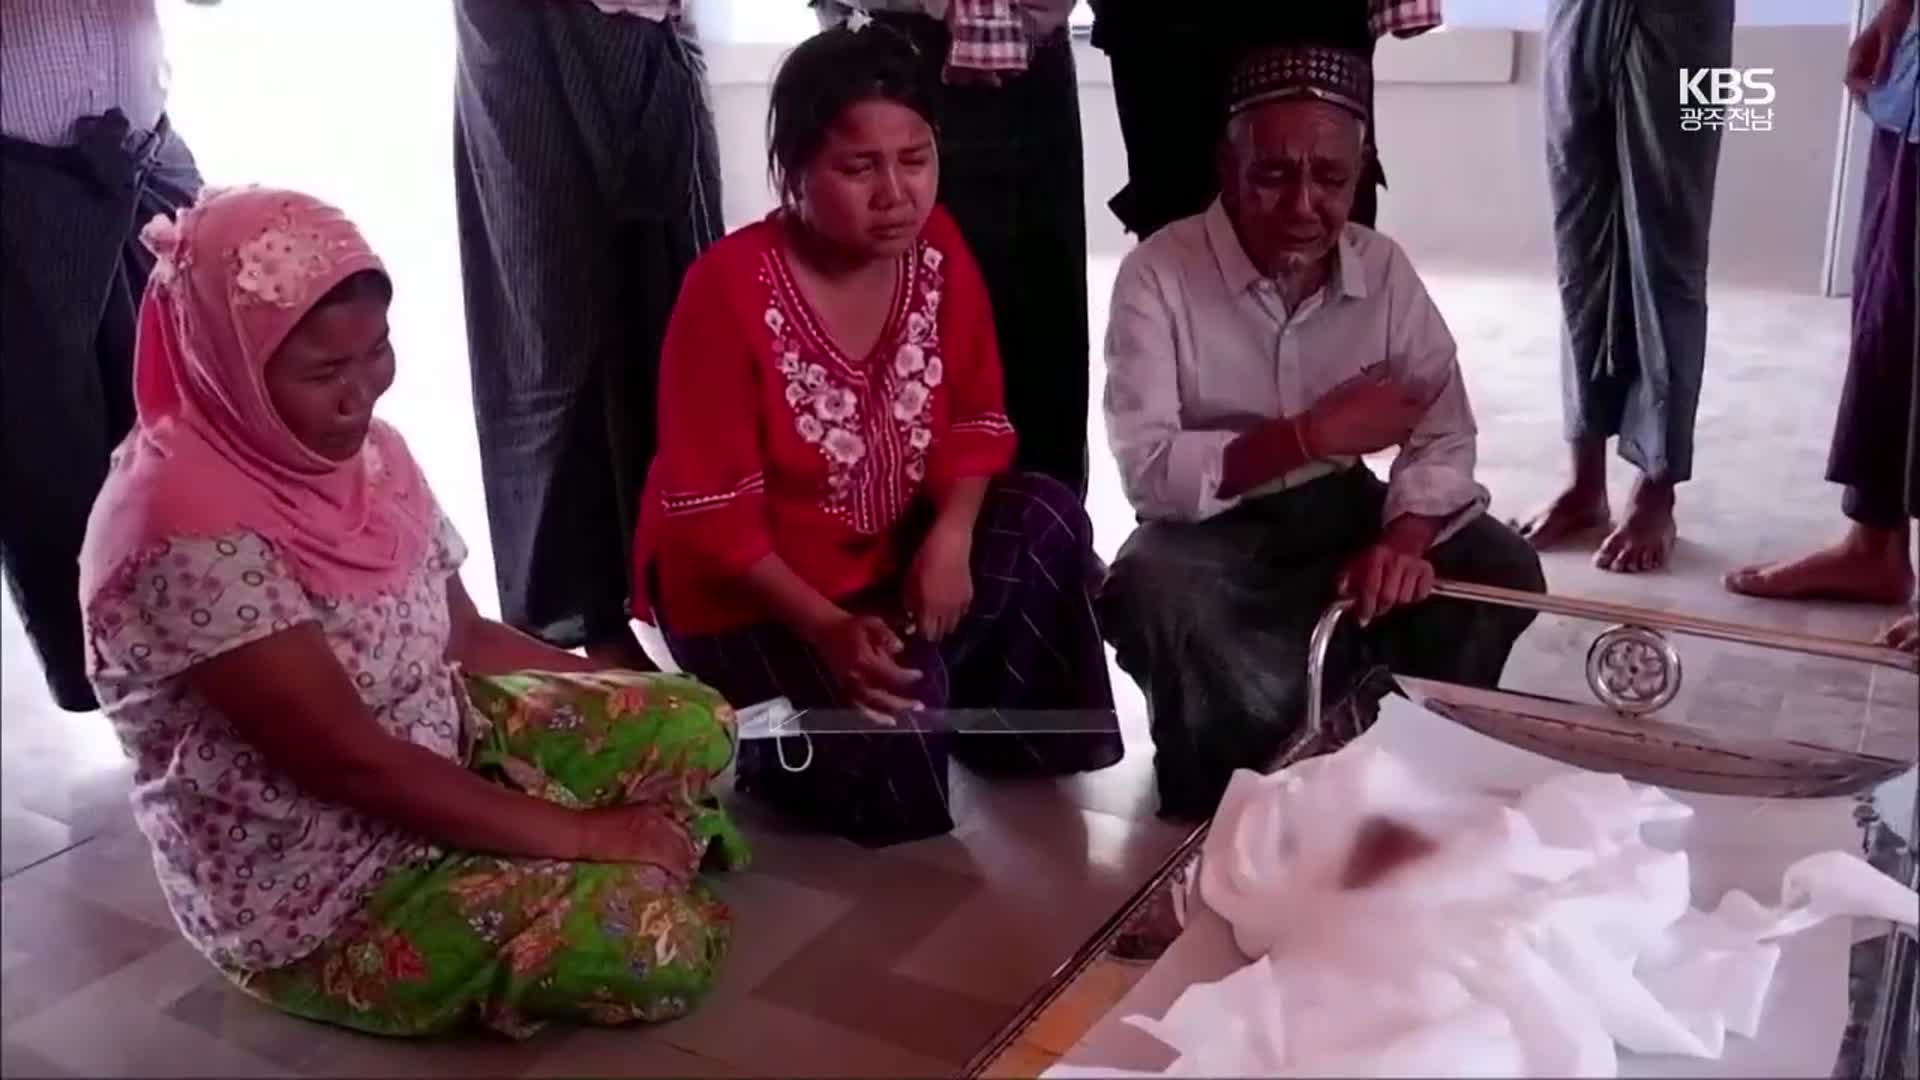 [영상] 군부 총격에 숨진 7살 소녀 장례